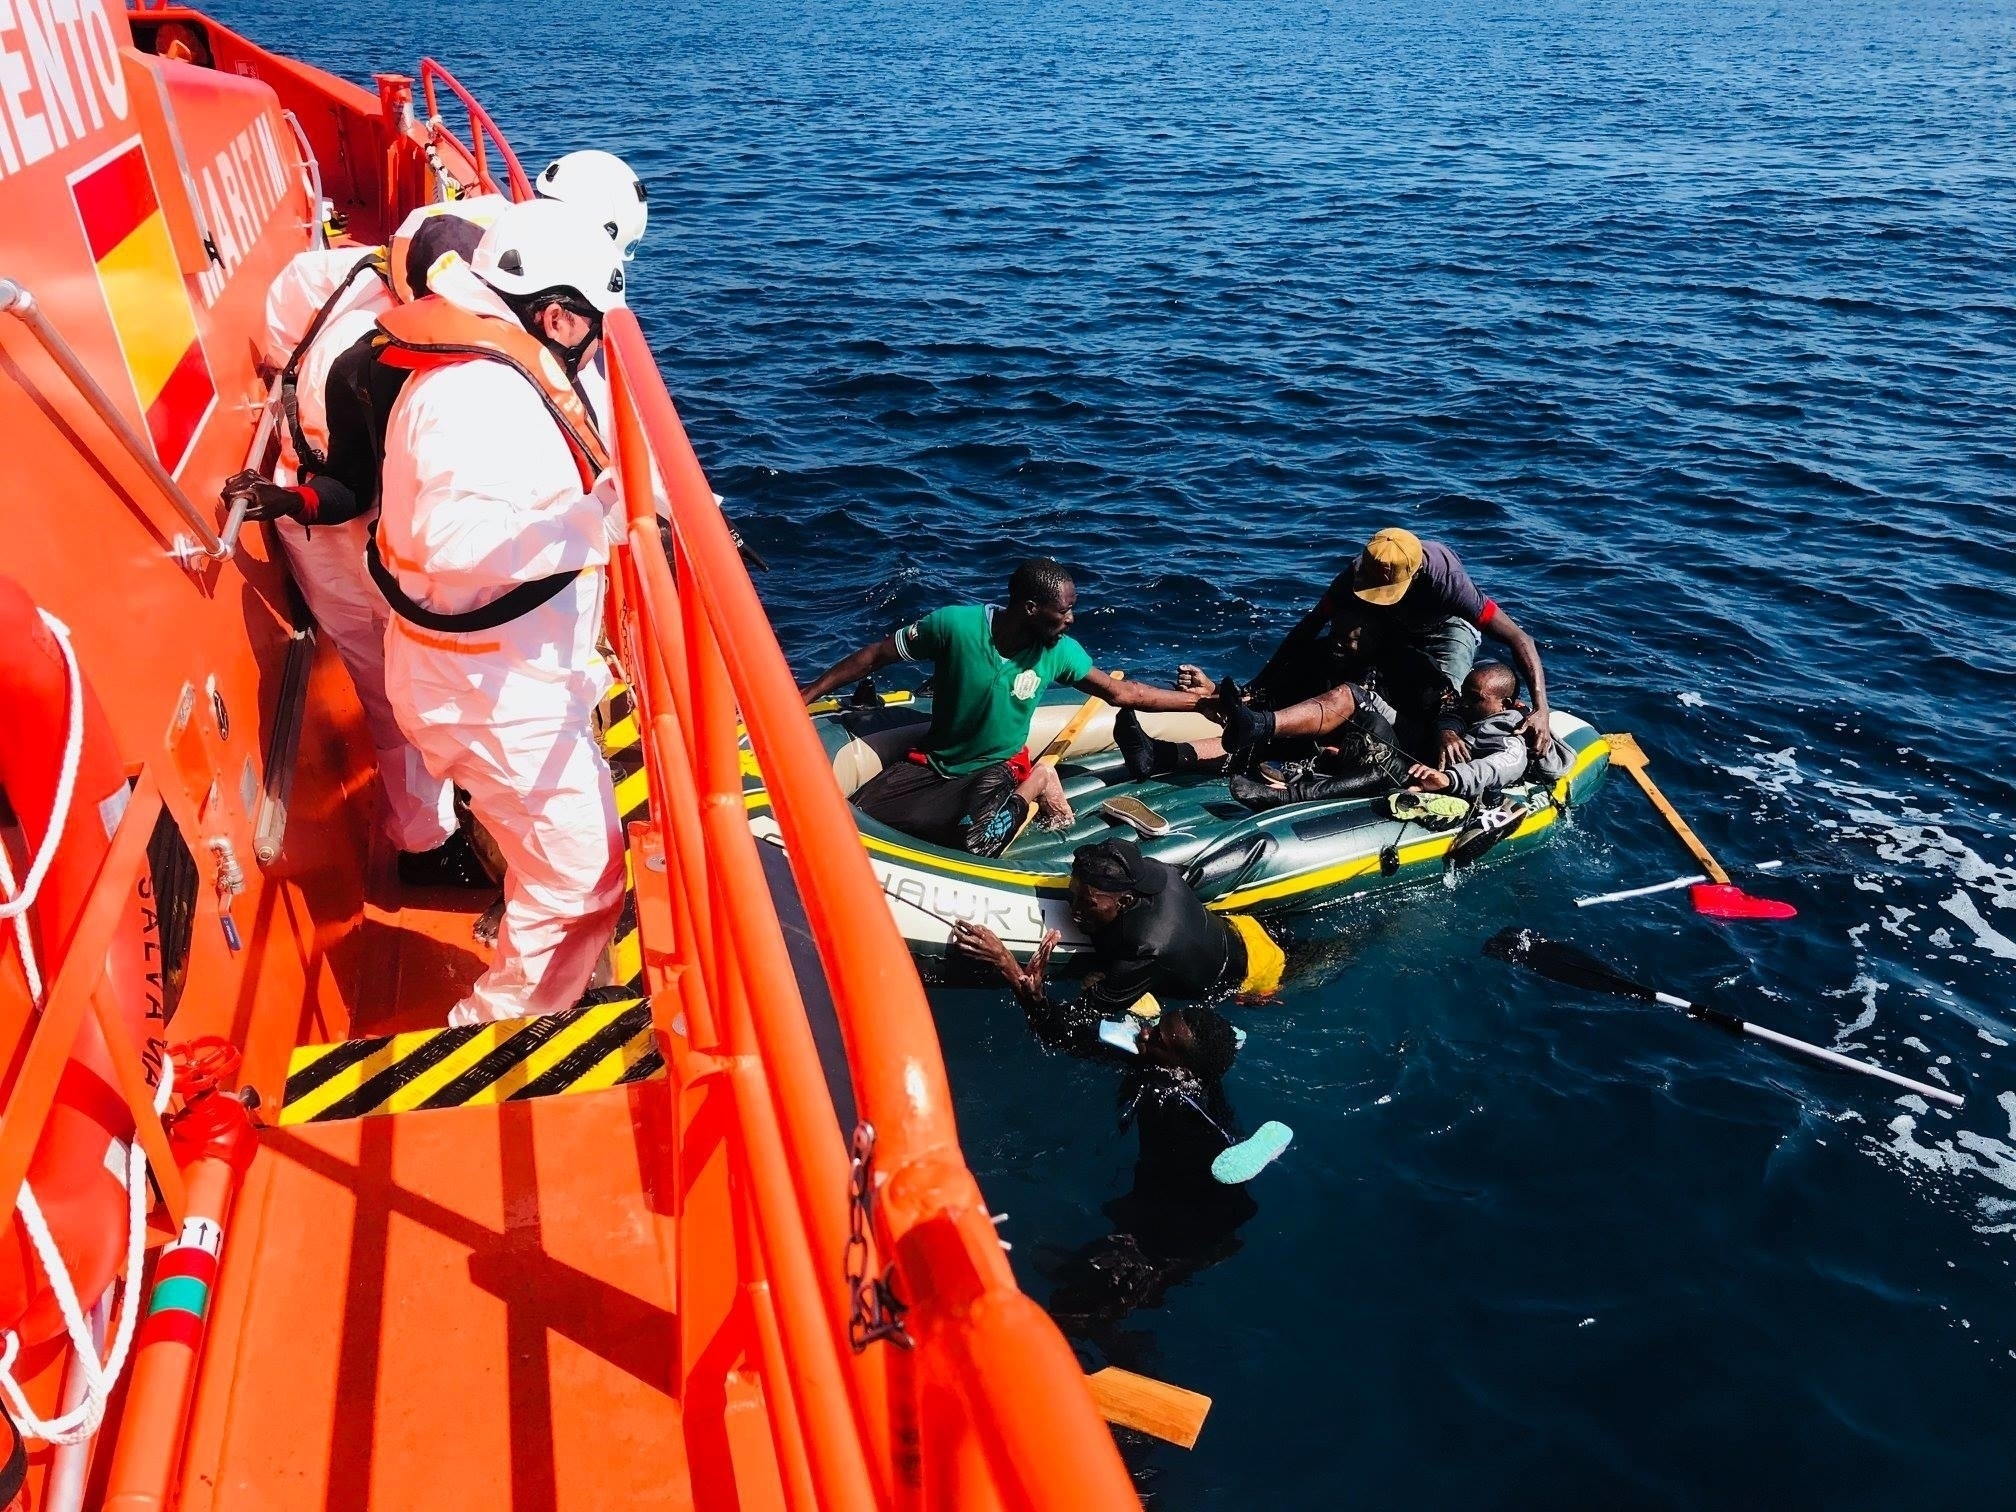 Salvamento Martimo rescata a inmigrantes llegados a las costas andaluzas en una barcaza.